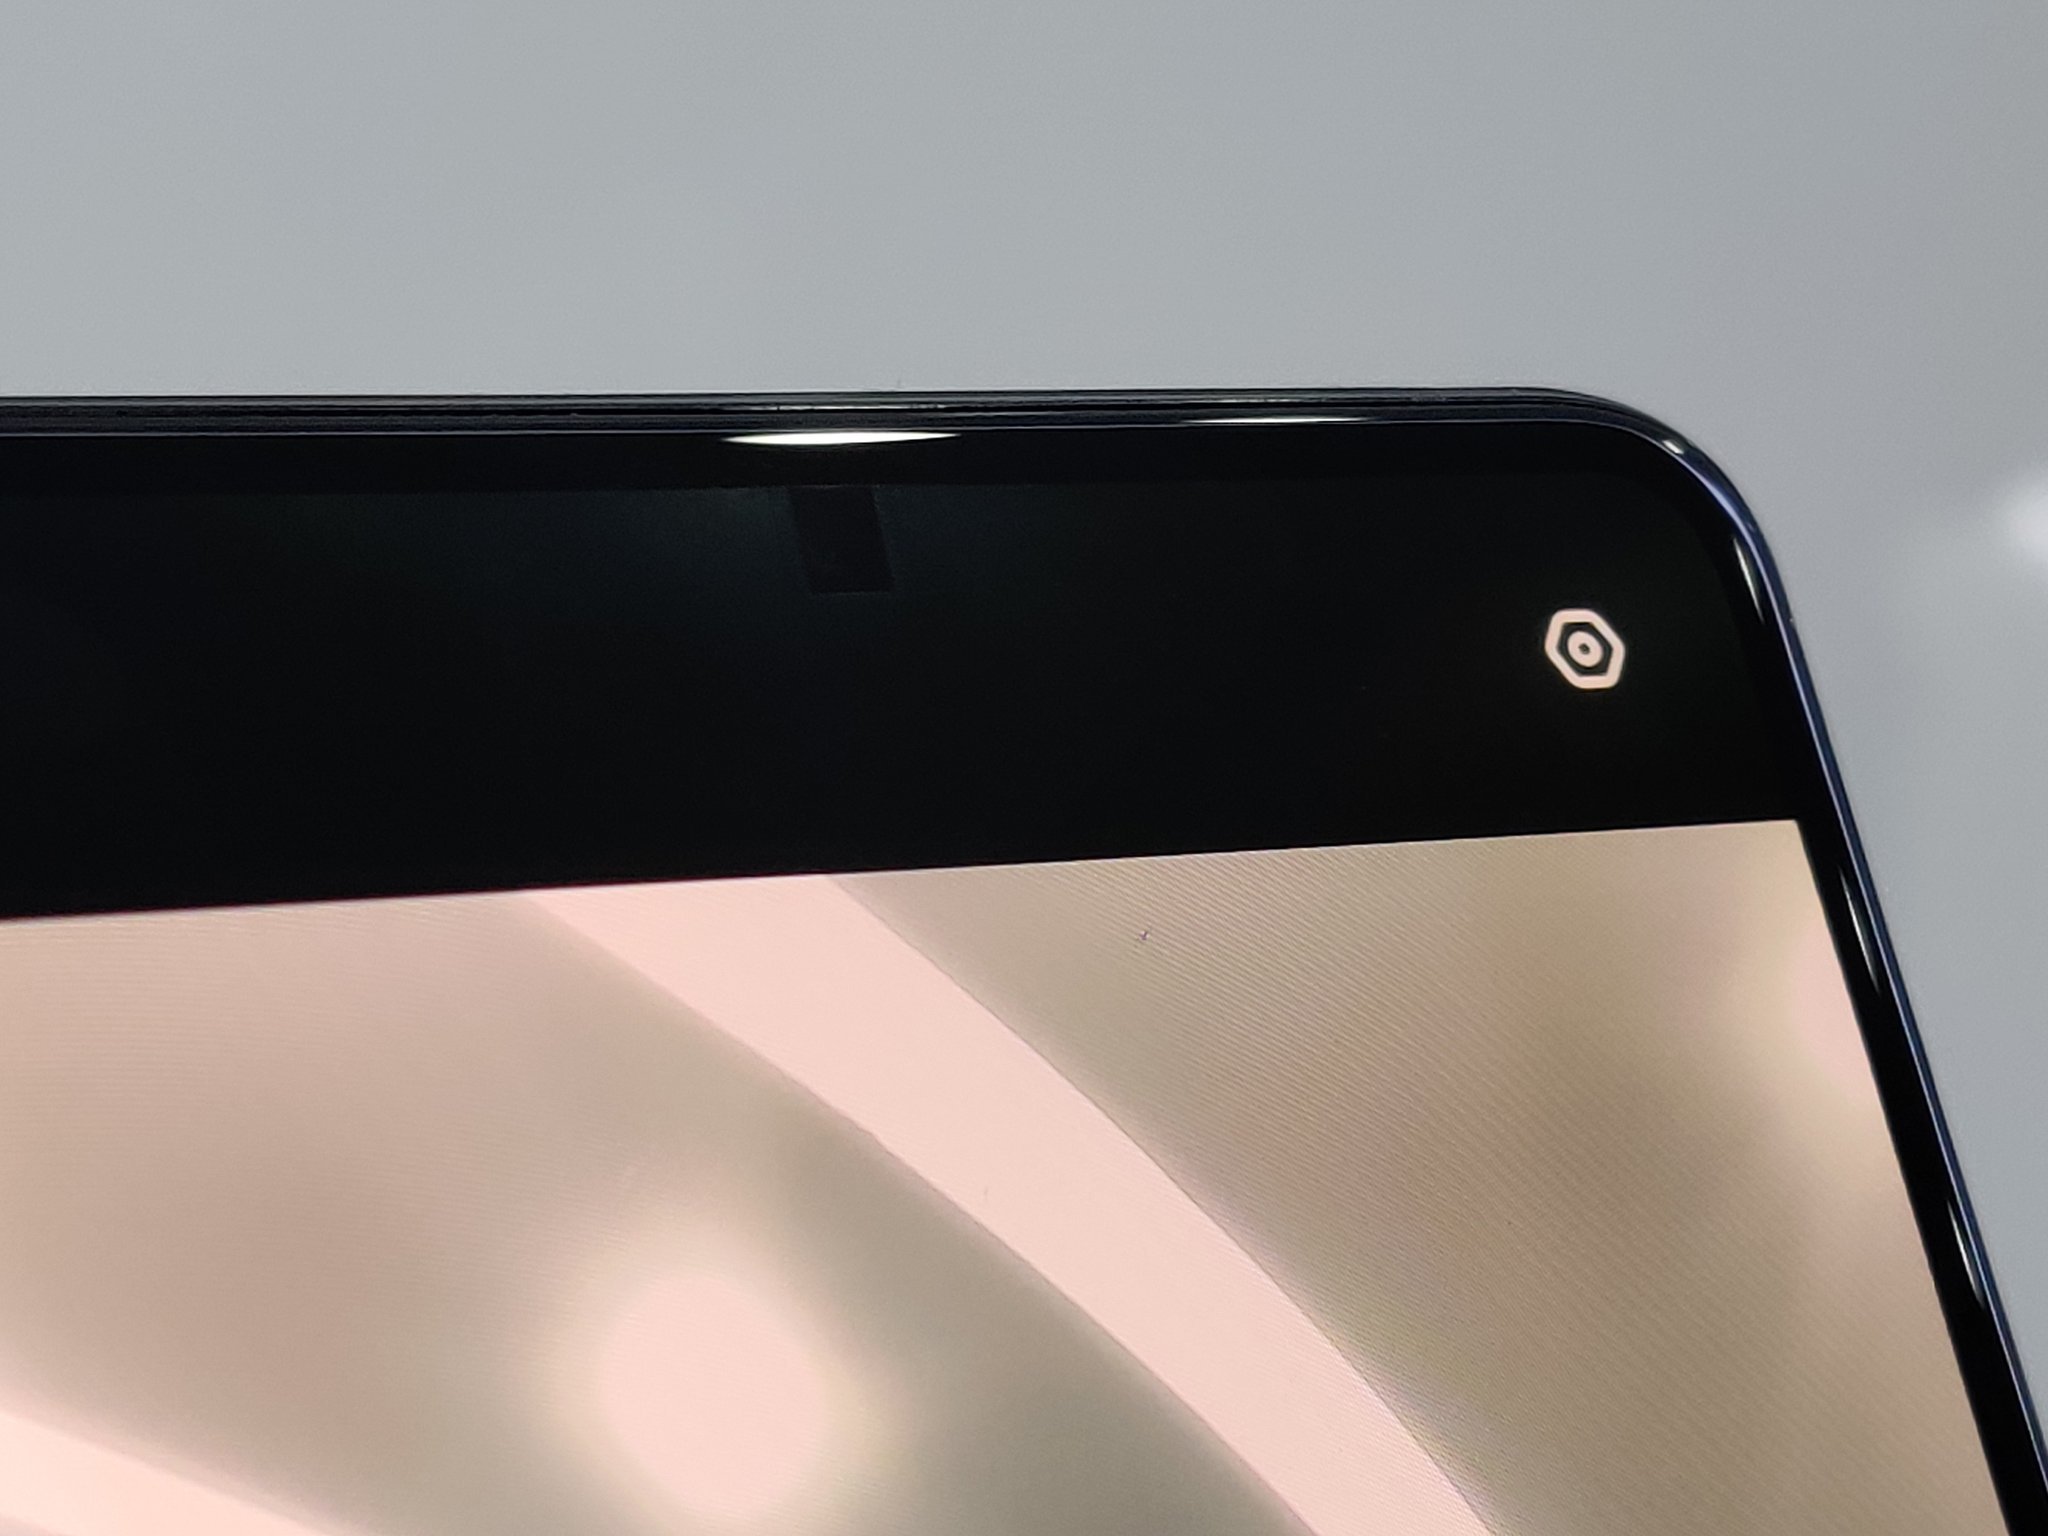 Prototipo de teléfono con cámara selfie debajo de la pantalla Oppo